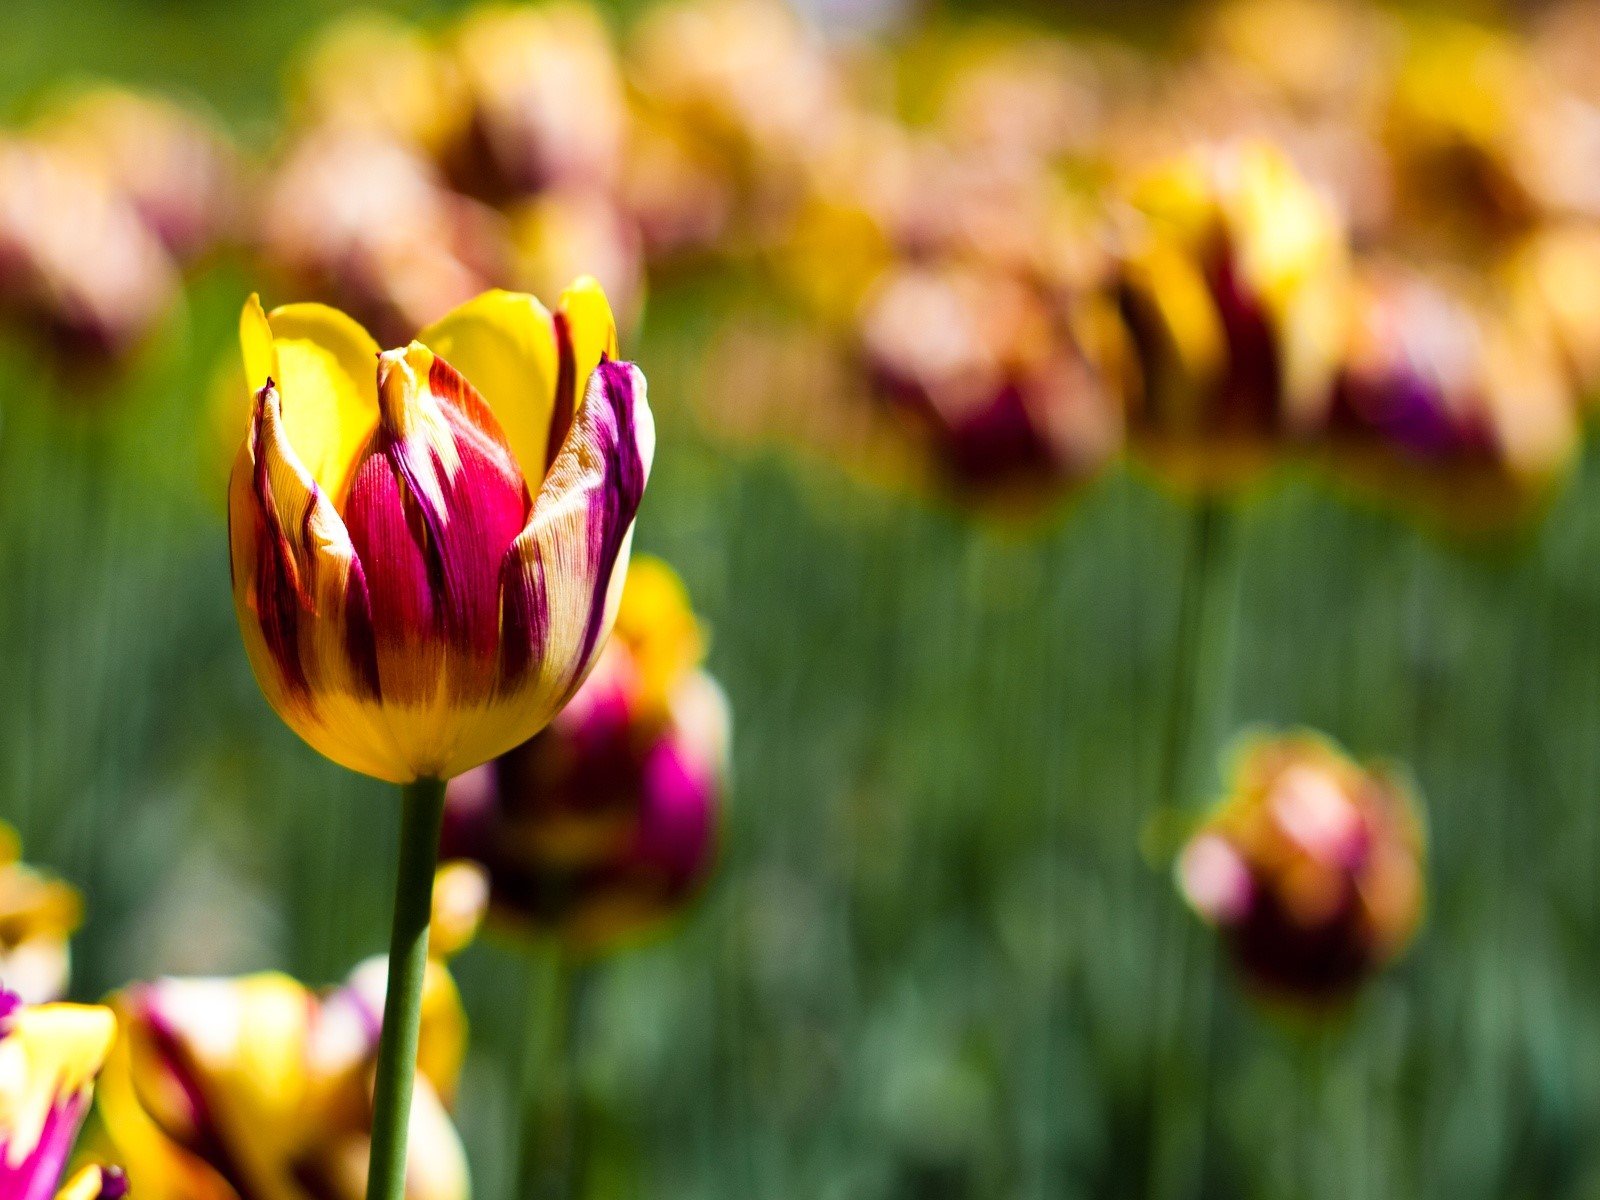 Fondos de pantalla Tulipanes en un jardín